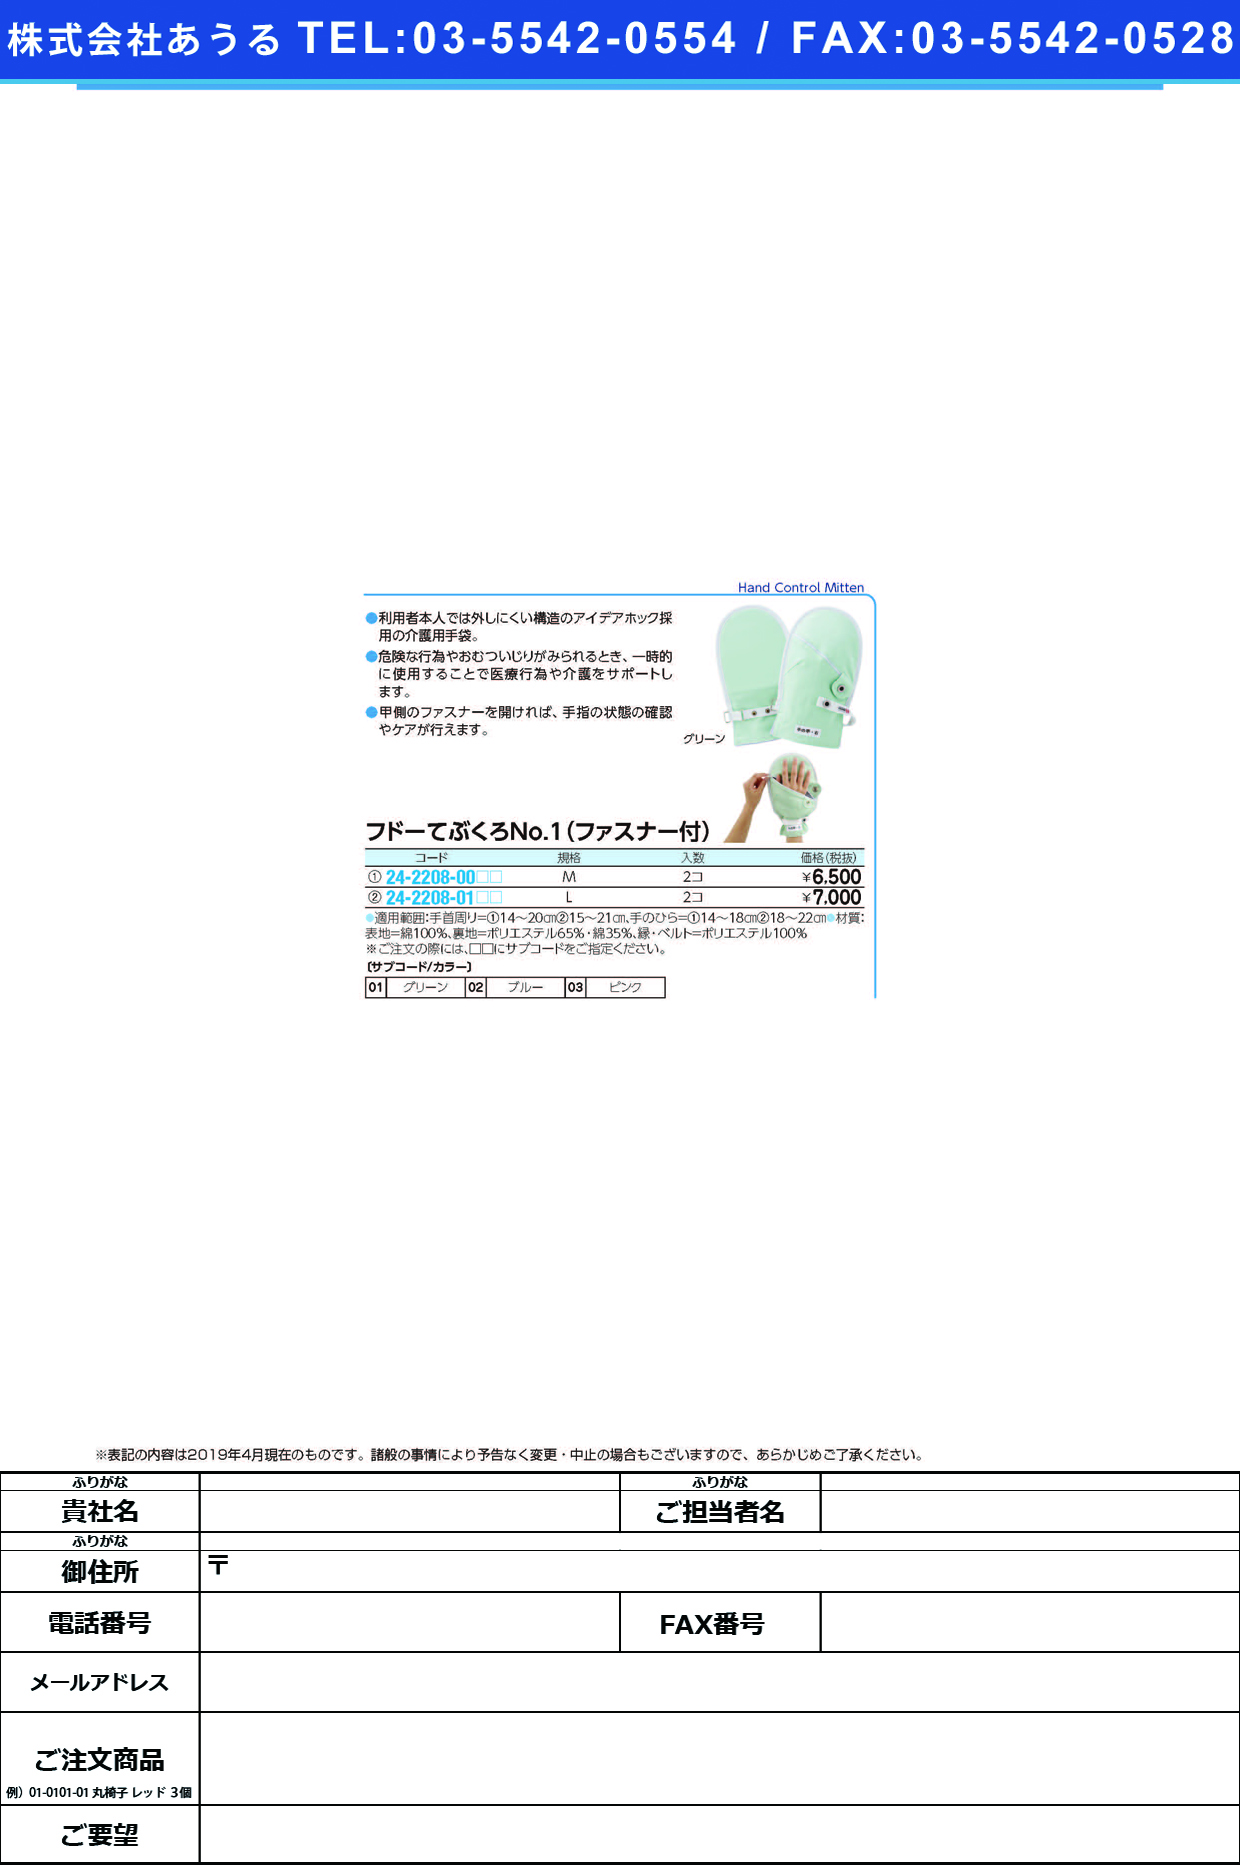 (24-2208-01)フドーてぶくろＮｏ．１ファスナー付 L(2ﾏｲｲﾘ) ﾌﾄﾞｰﾃﾌﾞｸﾛNO1ﾌｧｽﾅｰﾂｷ ピンク【1双単位】【2019年カタログ商品】